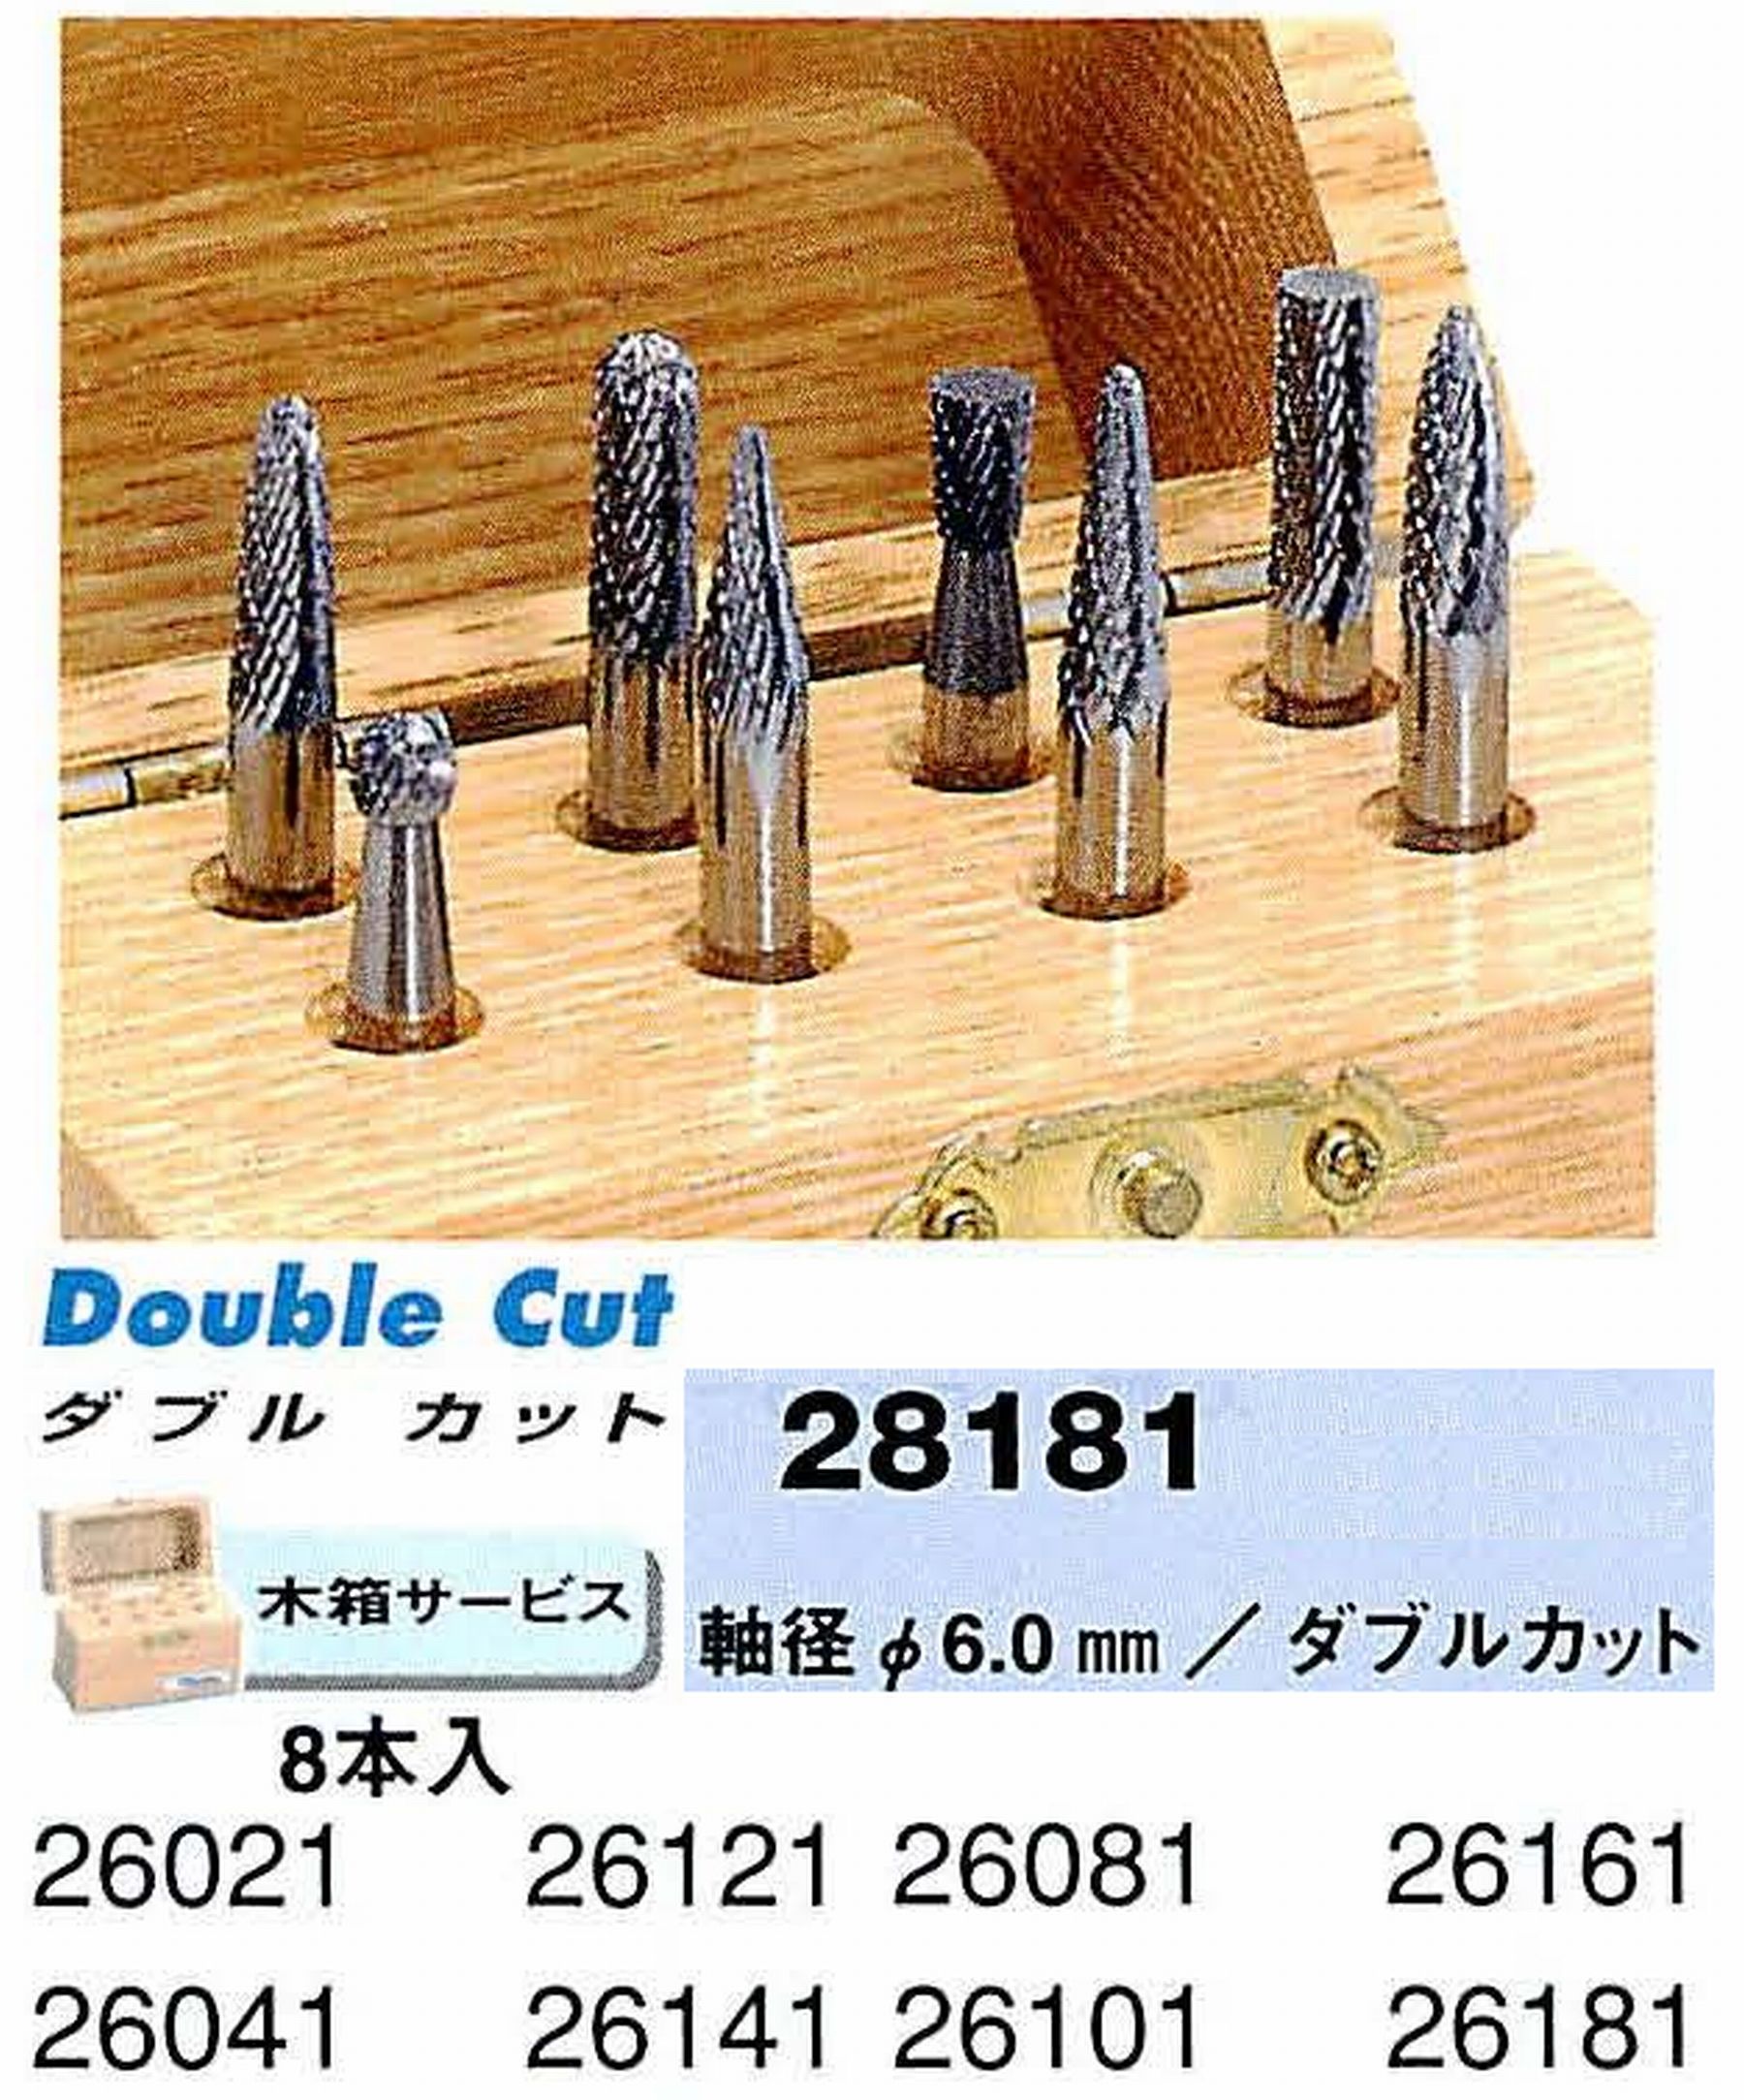 ナカニシ/NAKANISHI 超硬カッター アソートセット 軸径(シャンク)φ6.0mm 28181